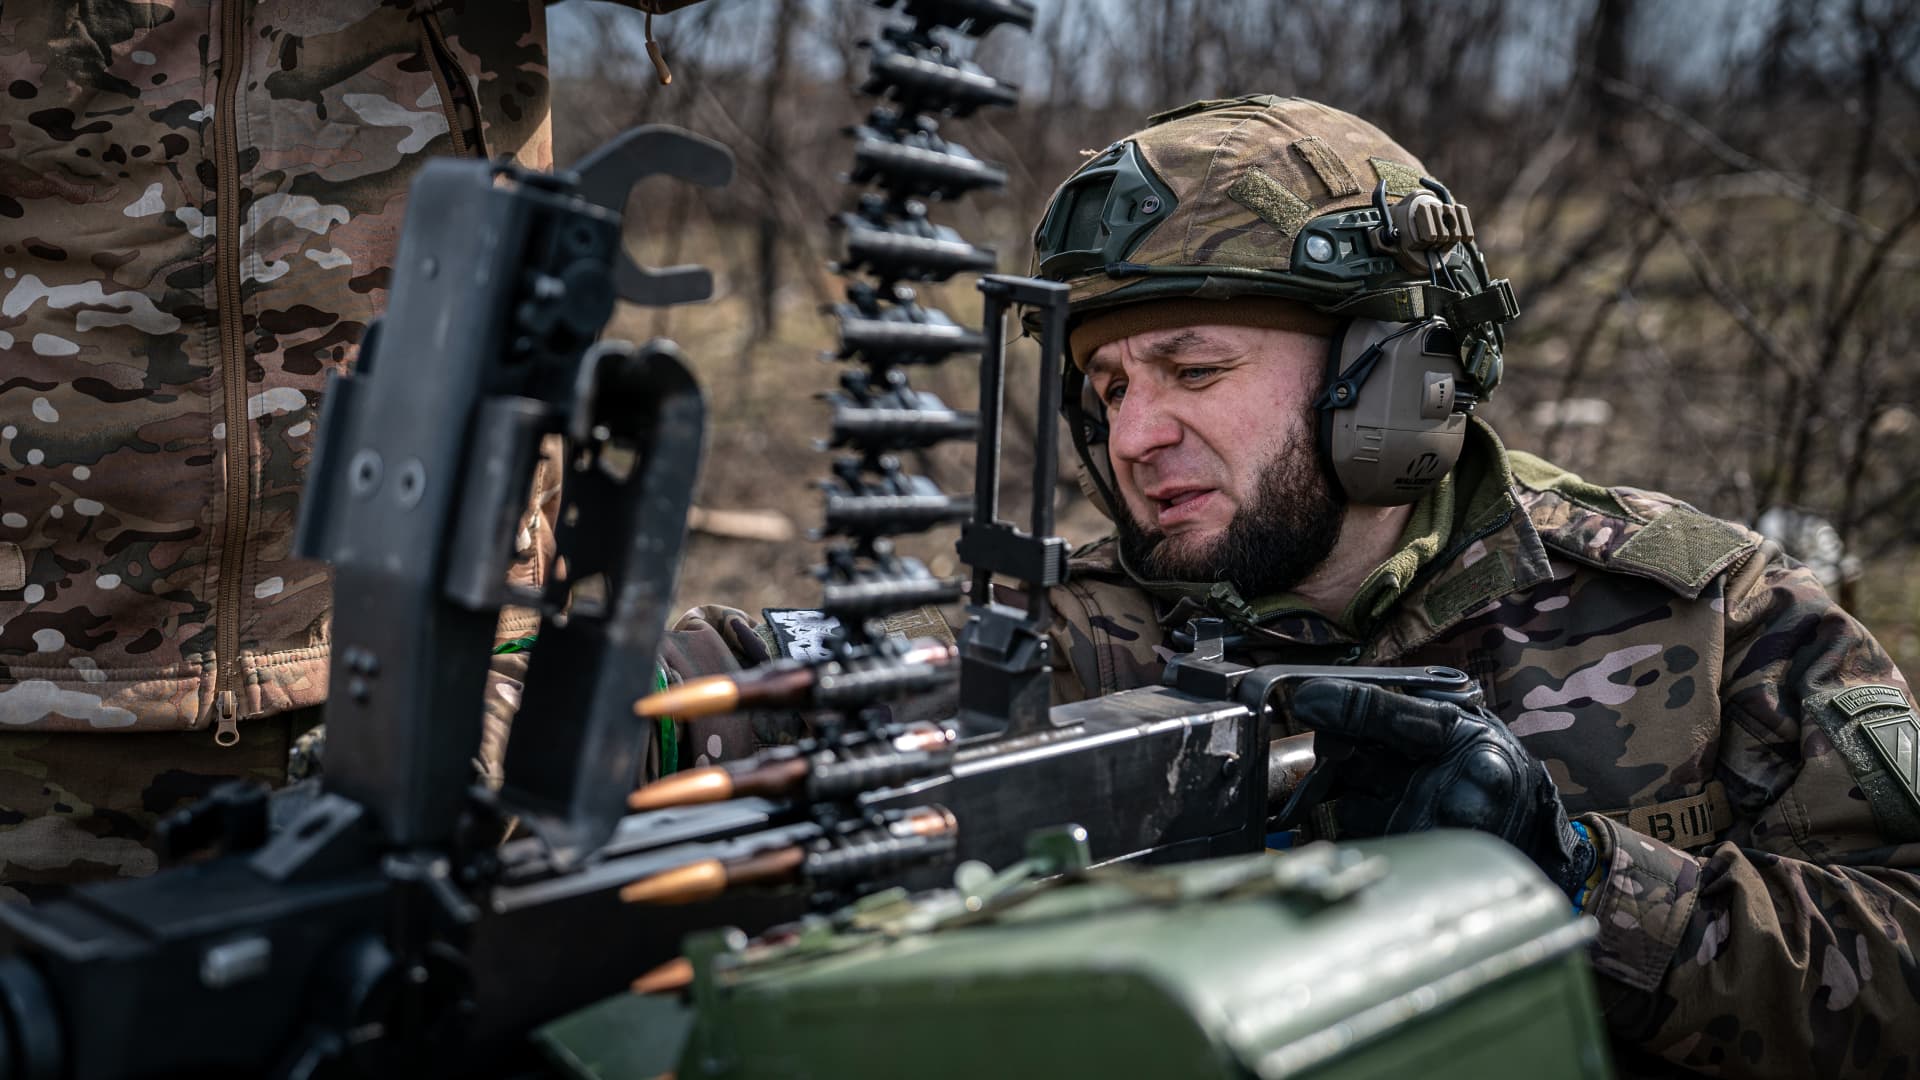 Ukrainian serviceman firing a machine gun at a firing range, Donetsk Oblast, Ukraine, March 15, 2023 